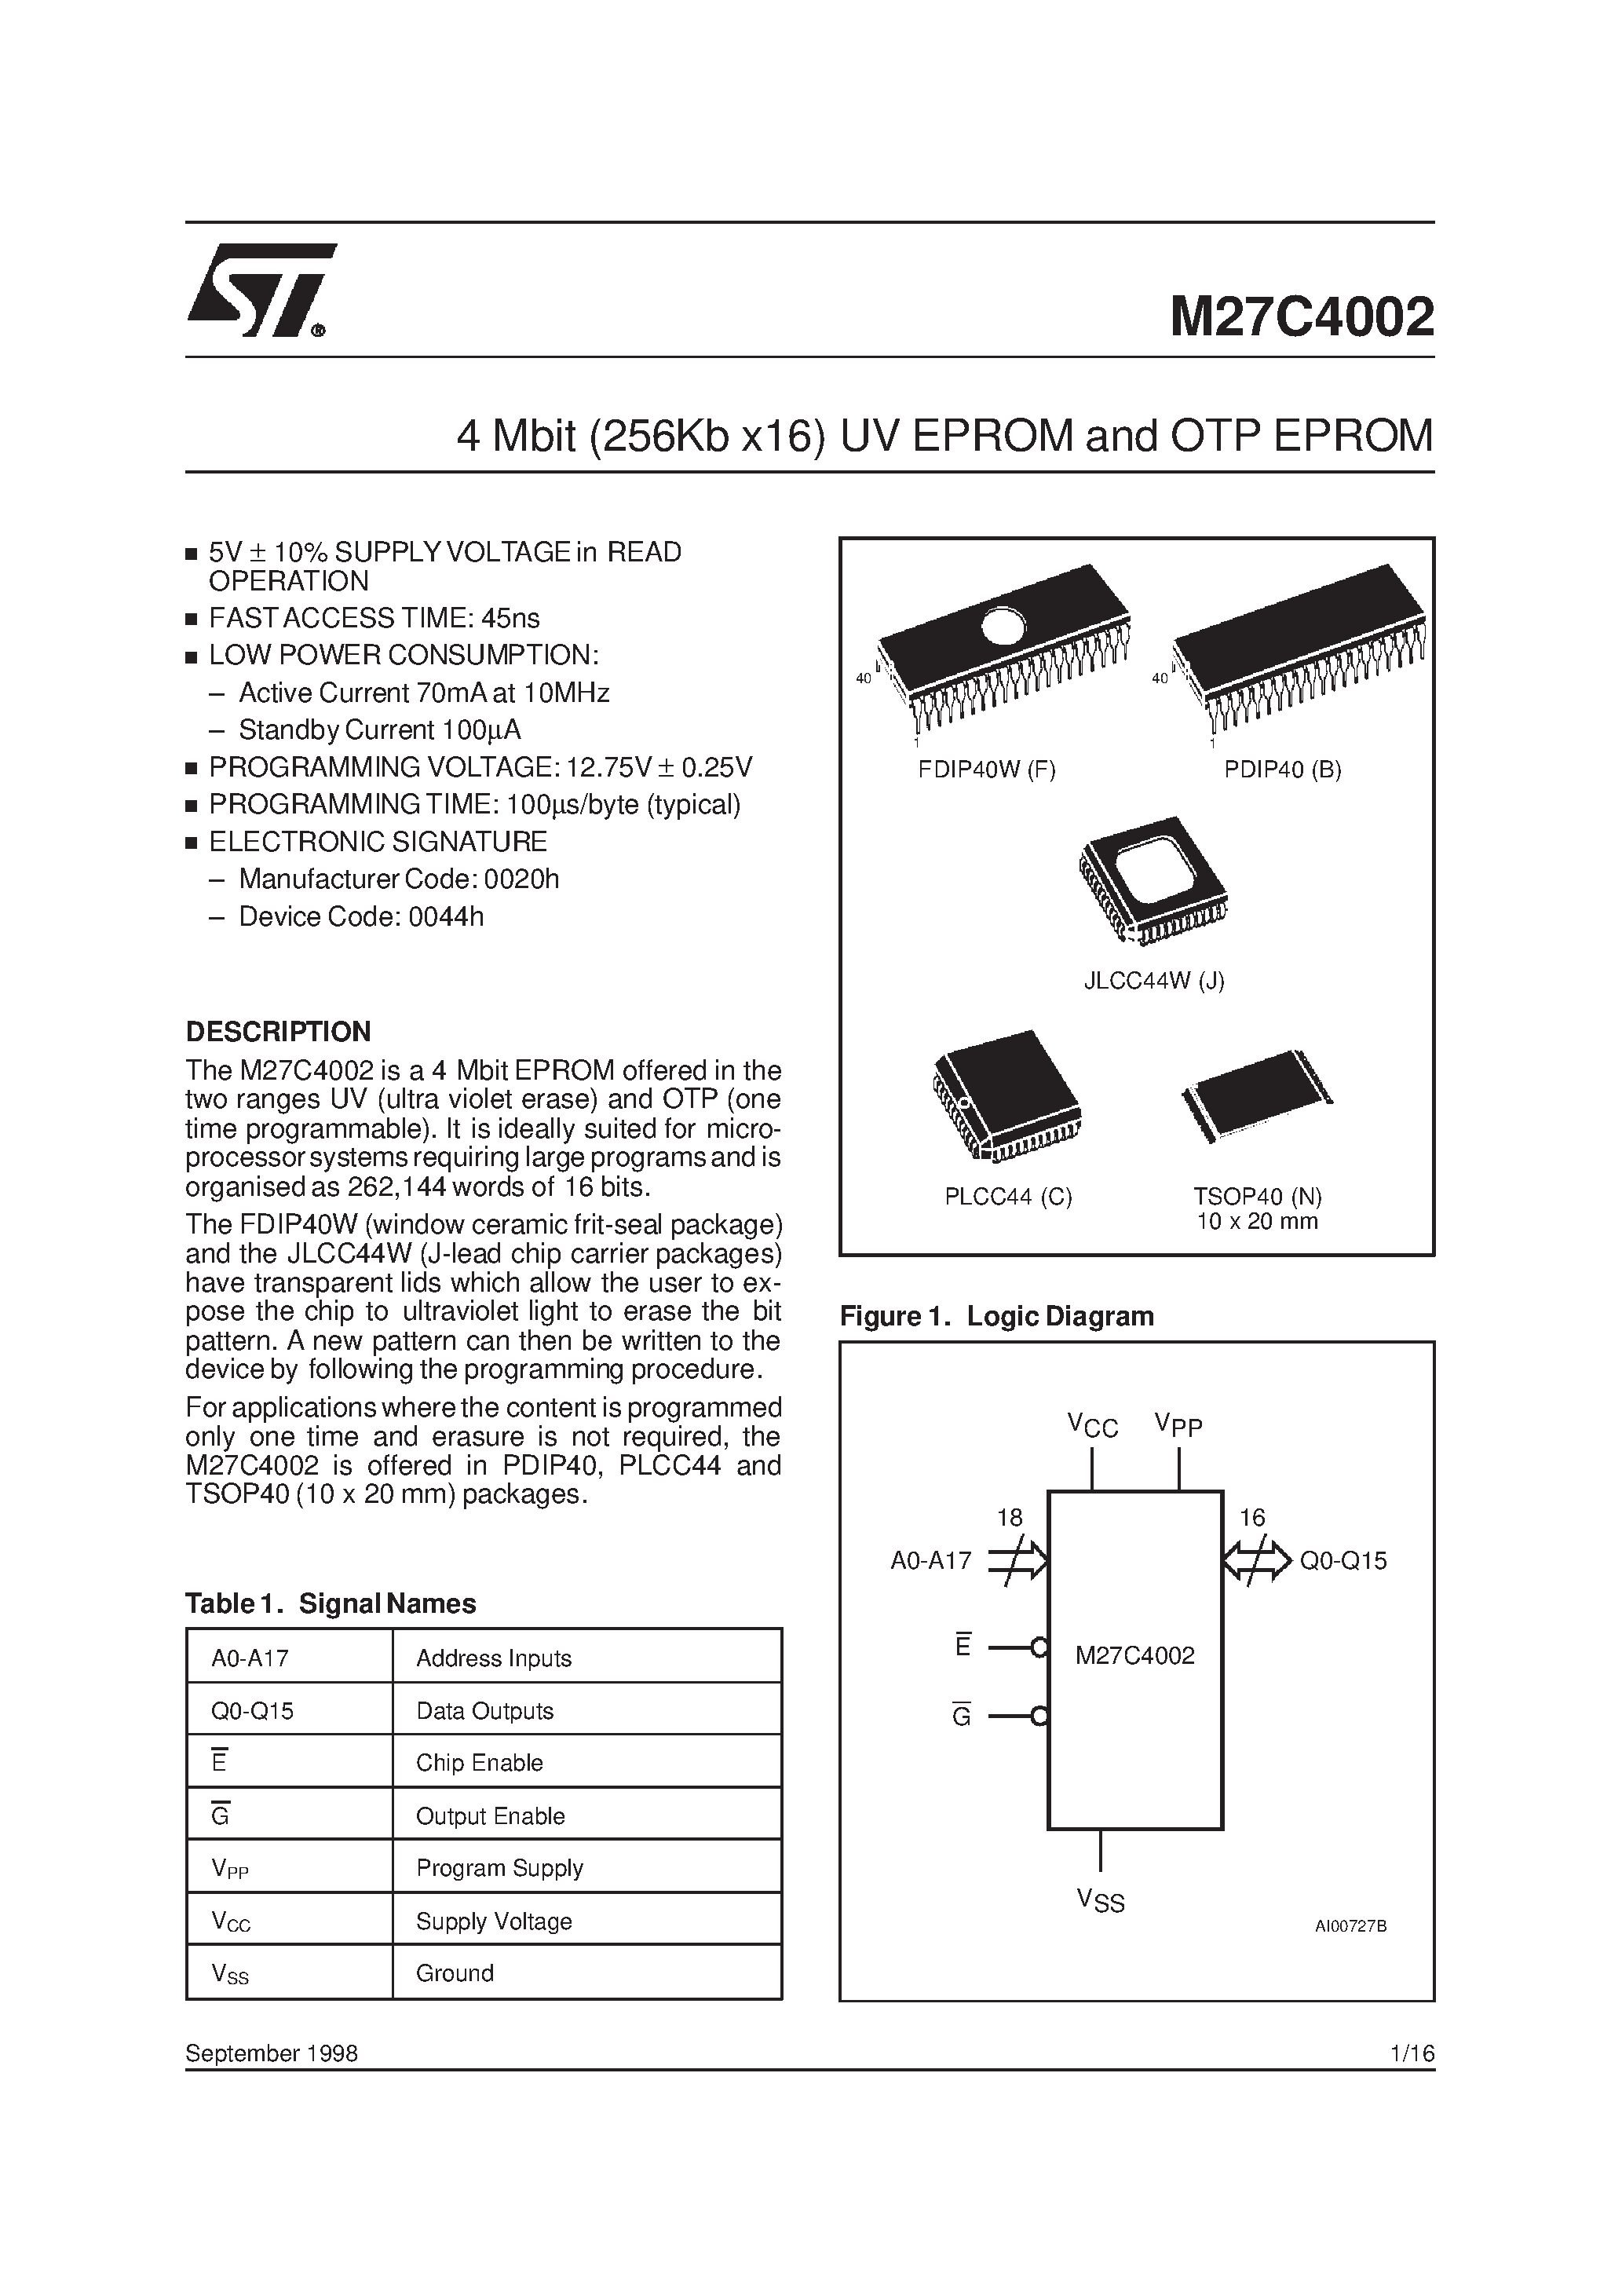 Datasheet M27C4002-10XN1X - 4 Mbit 256Kb x16 UV EPROM and OTP EPROM page 1